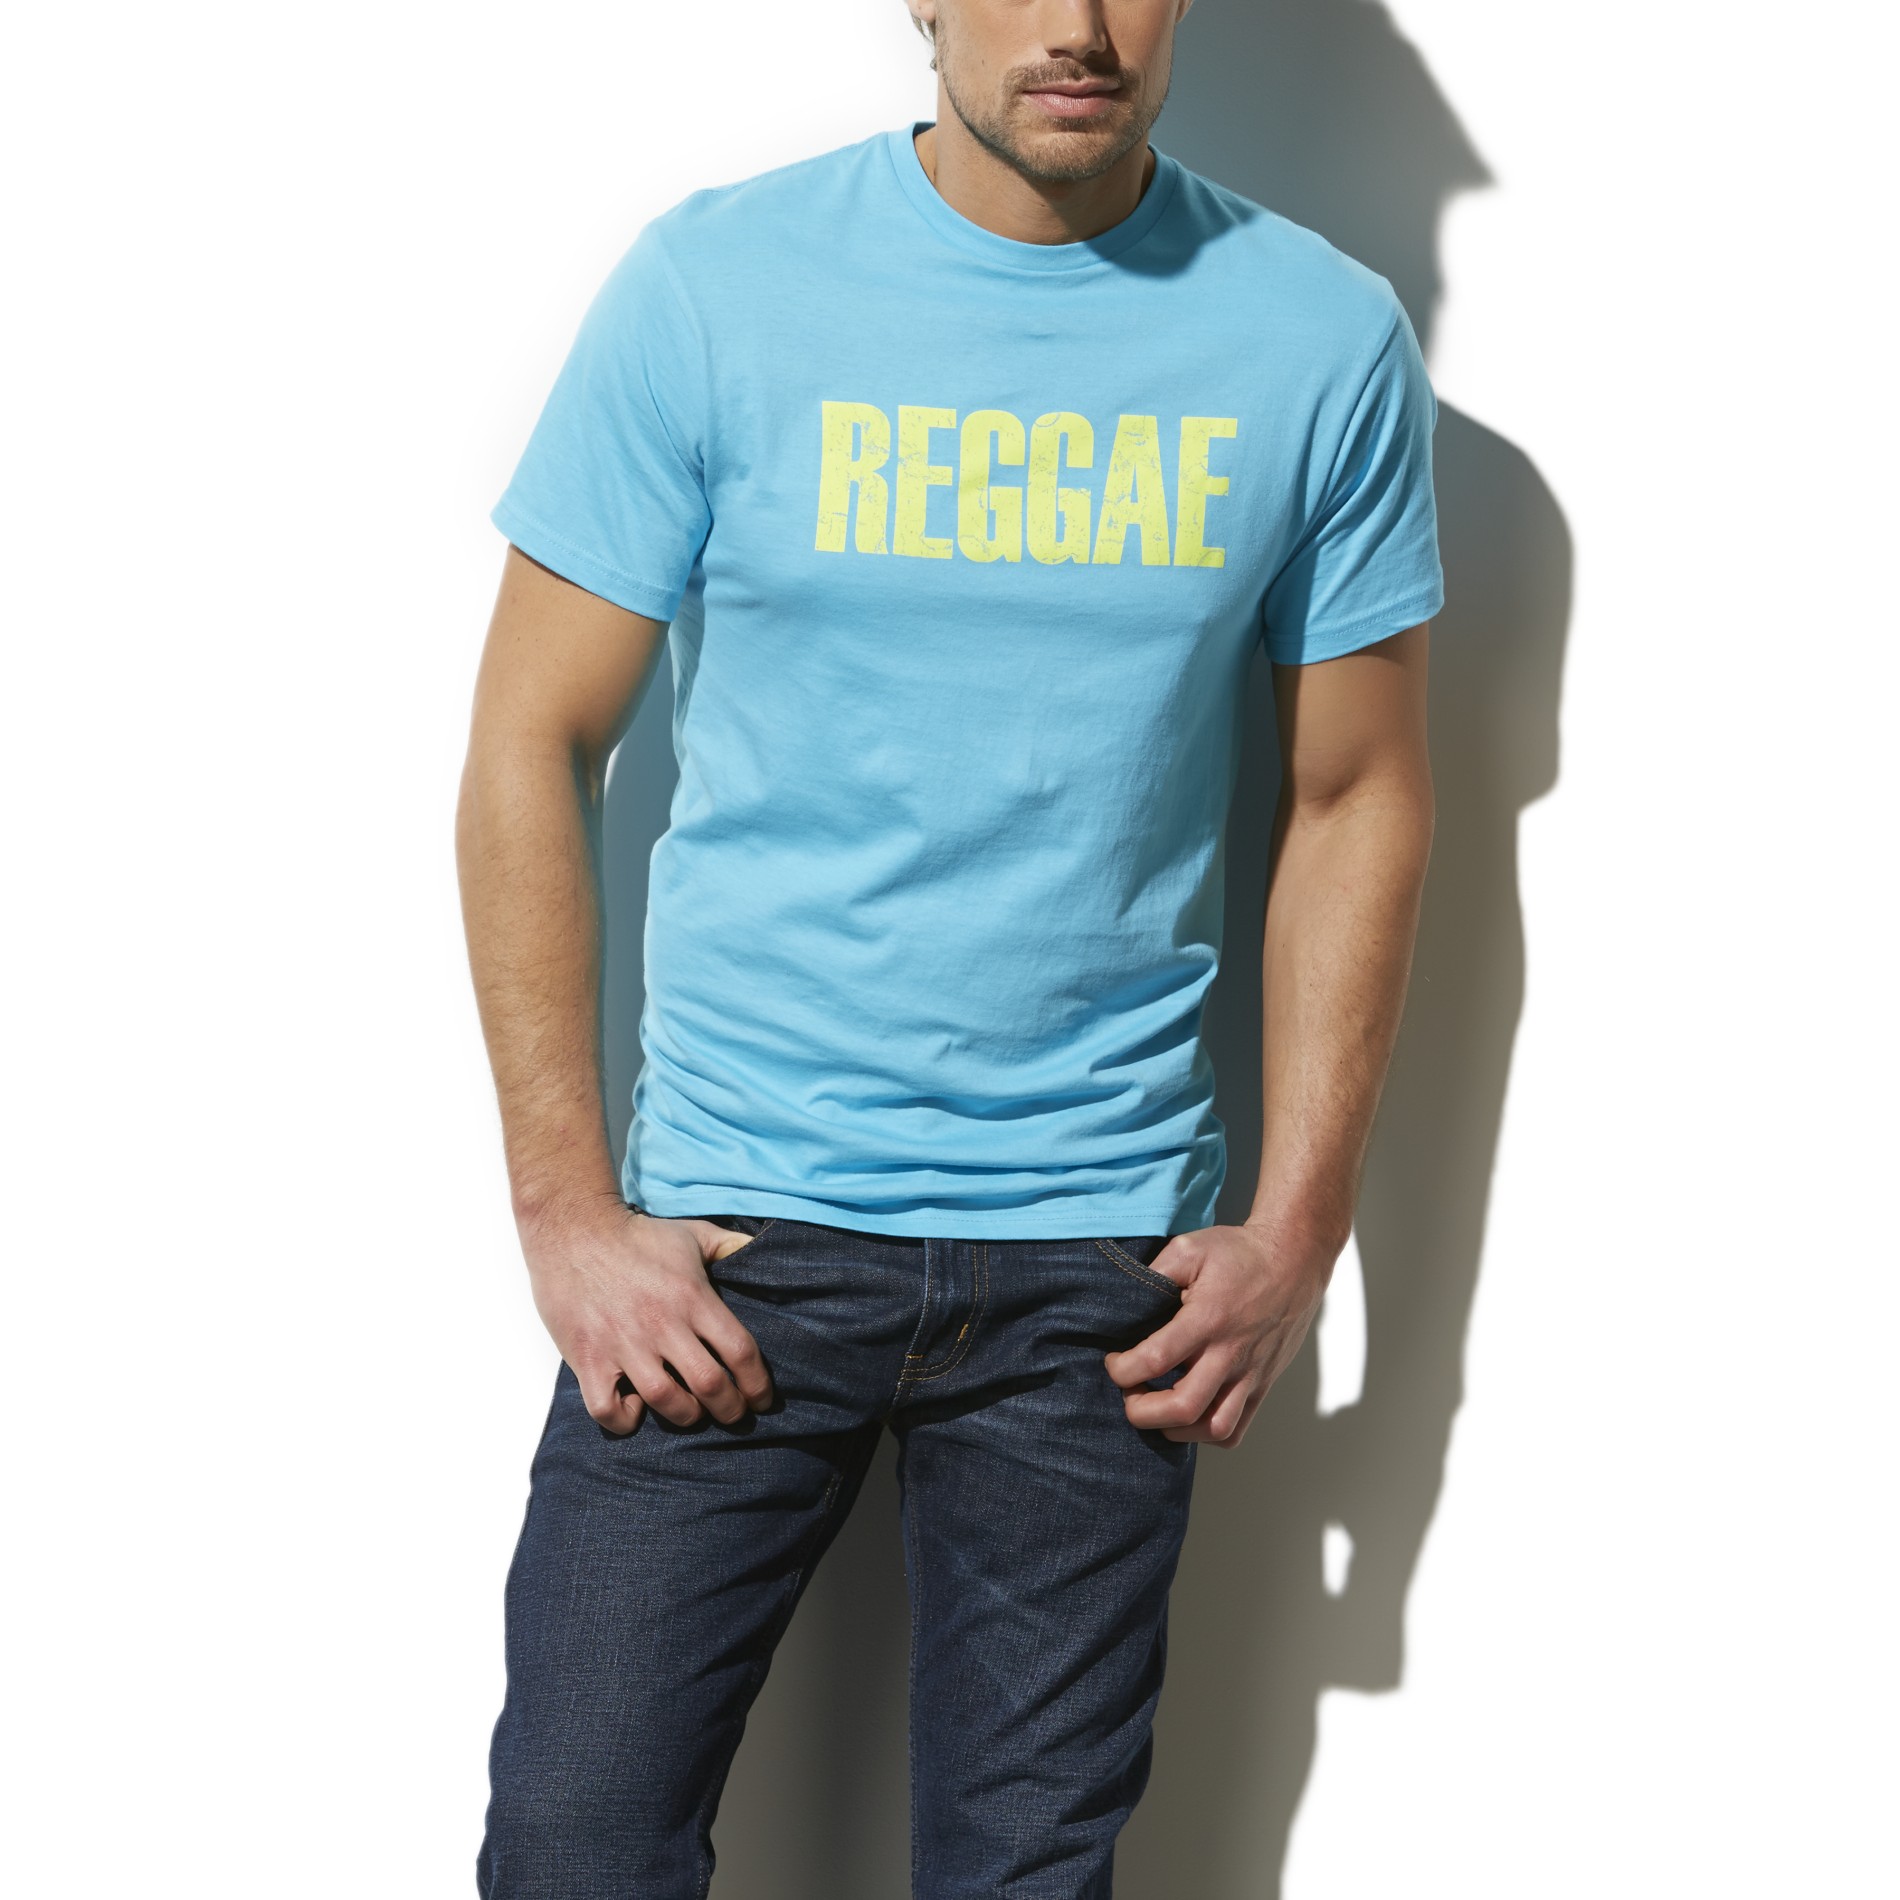 Adam Levine Men's Graphic T-Shirt - Reggae